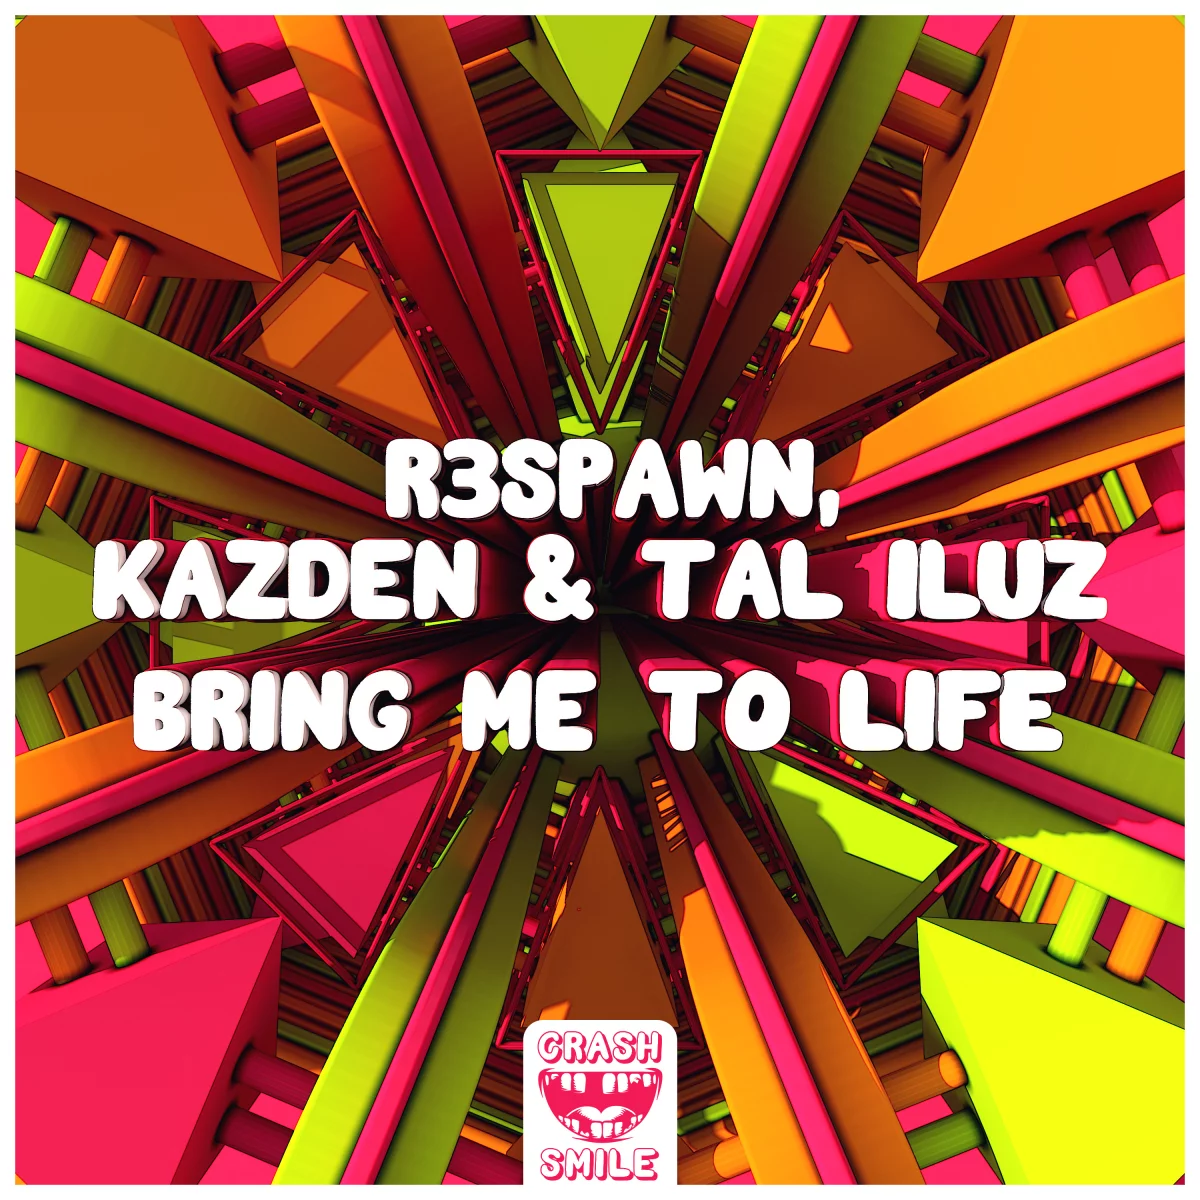 Bring Me To Life - R3SPAWN⁠, KAZDEN⁠ & Tal Iluz⁠ 